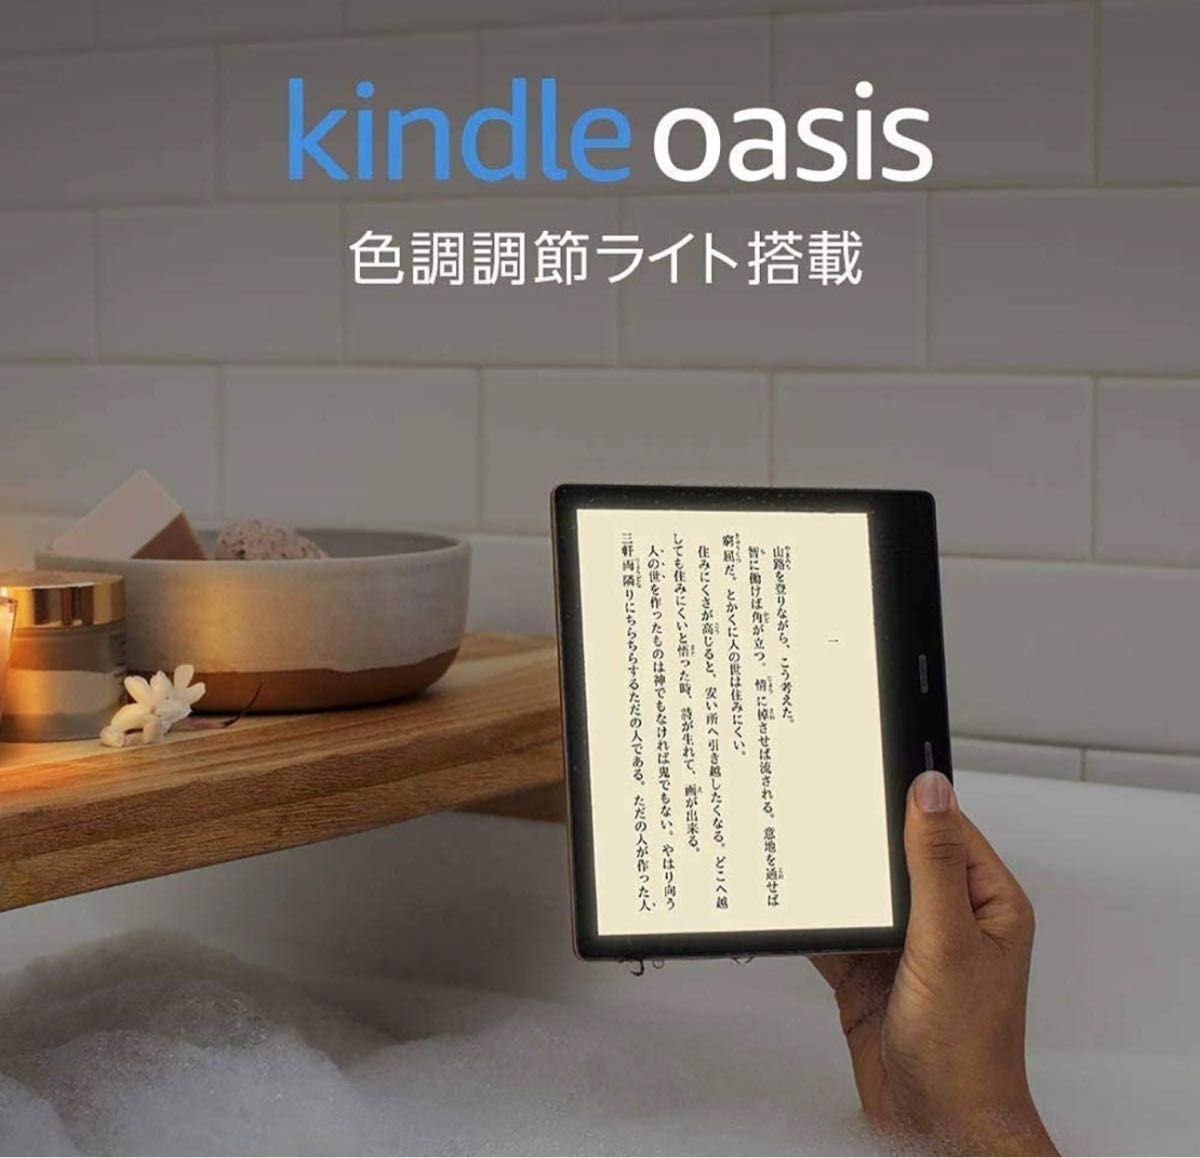 【2台セット】Kindle Oasis 色調調節ライト搭載 wifi 32GB 電子書籍リーダー 